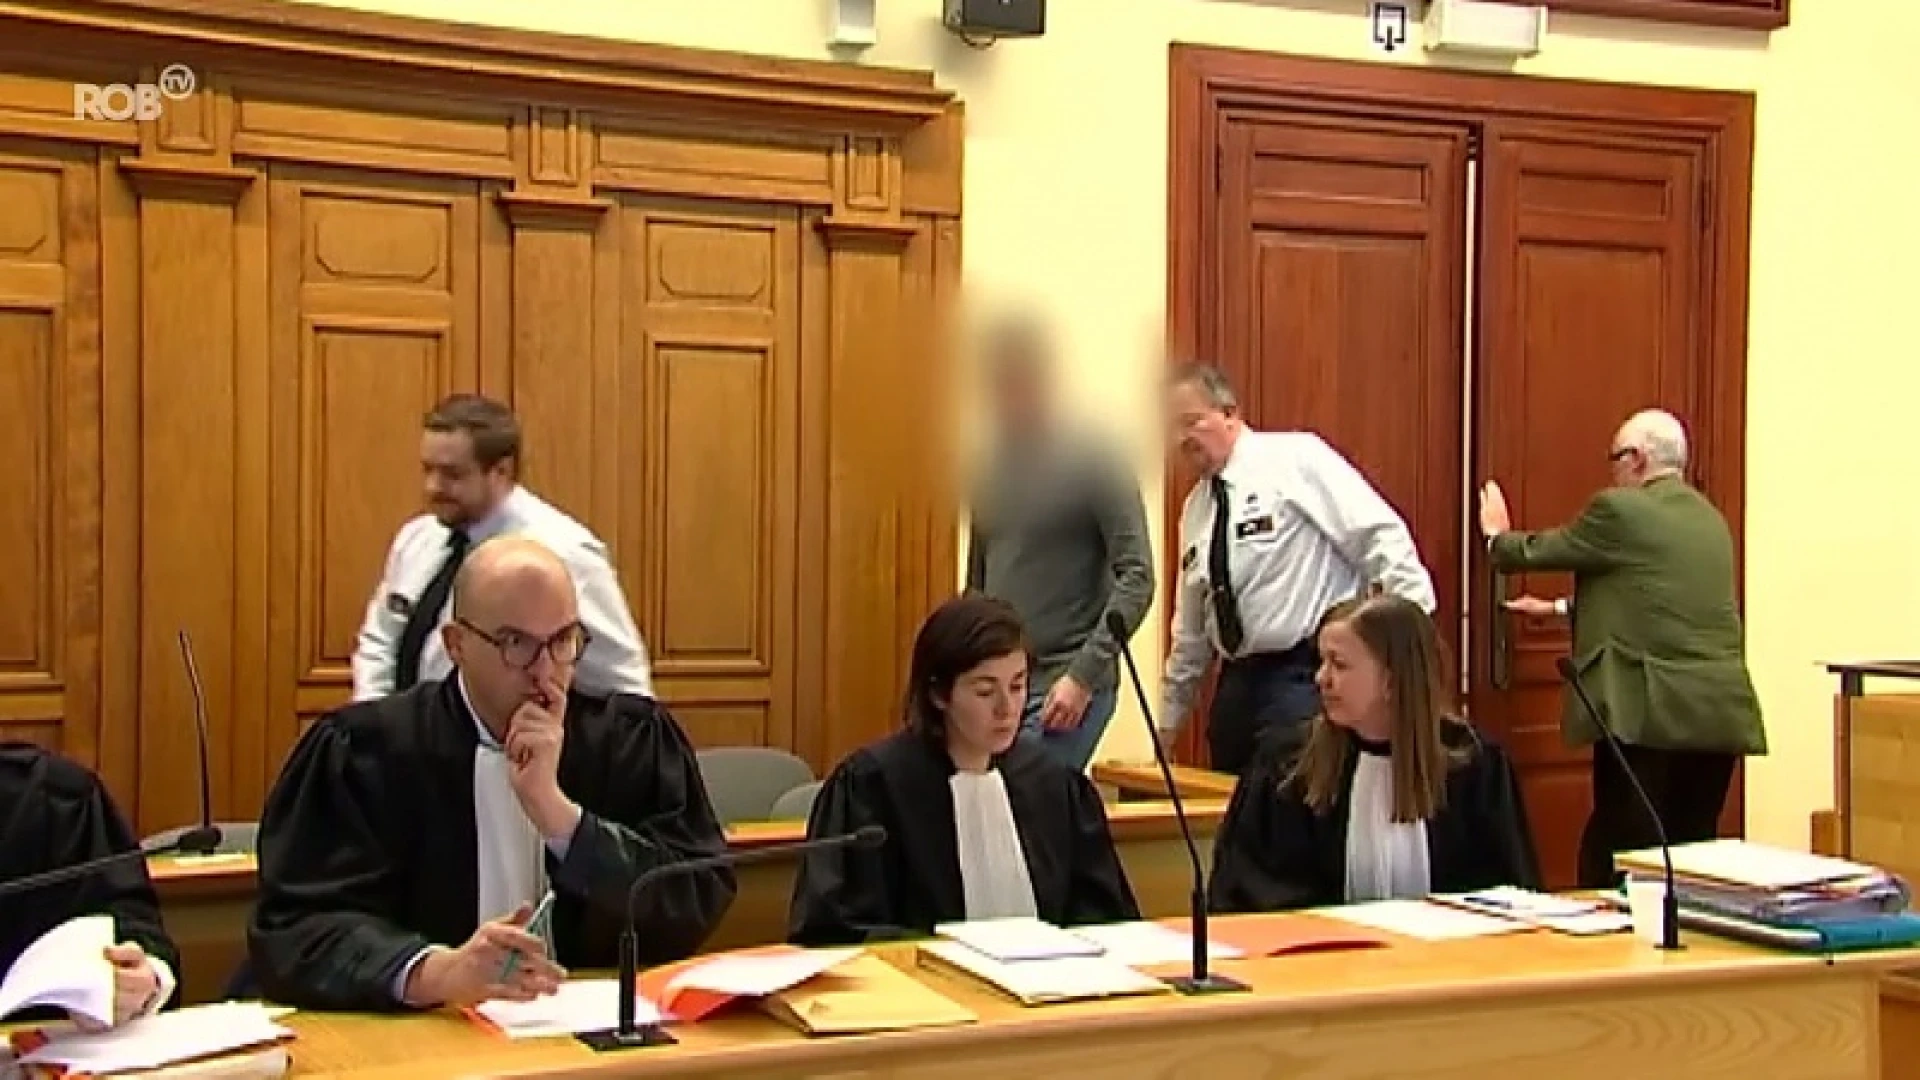 12 mensen oordelen vanaf maandag over moord in Tienen